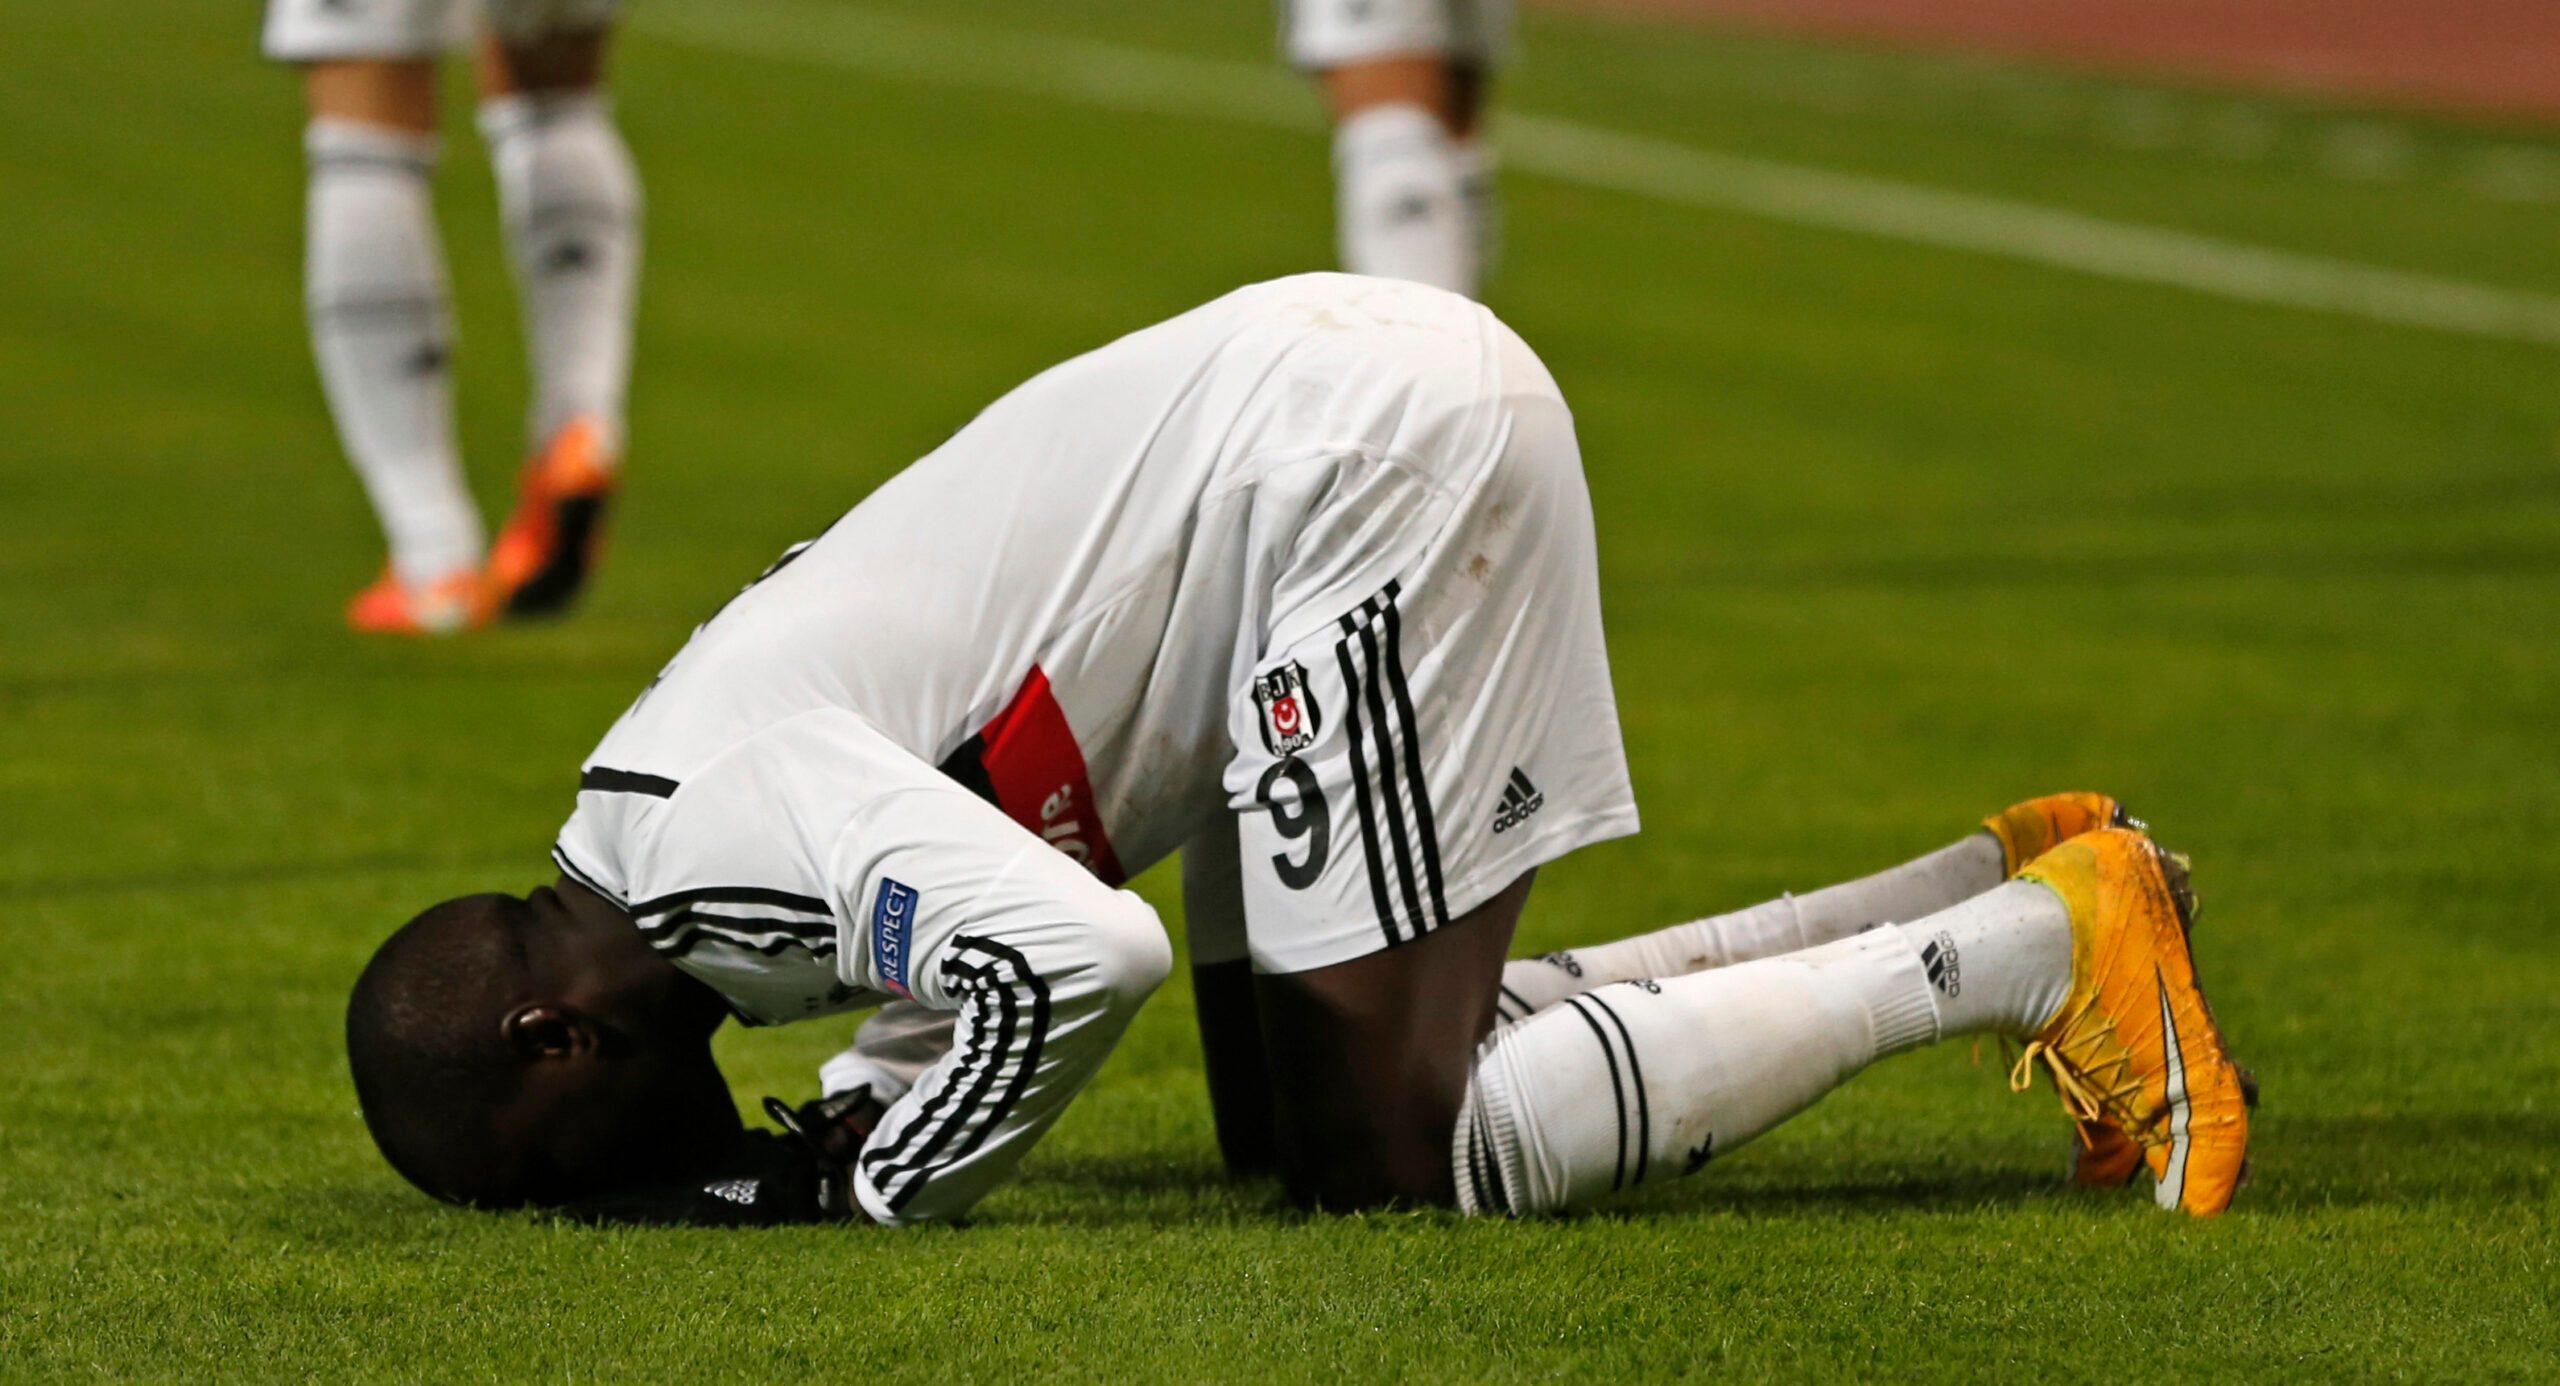 Mantan striker Chelsea, Demba Ba, alami patah kaki yang dapat akhiri kariernya